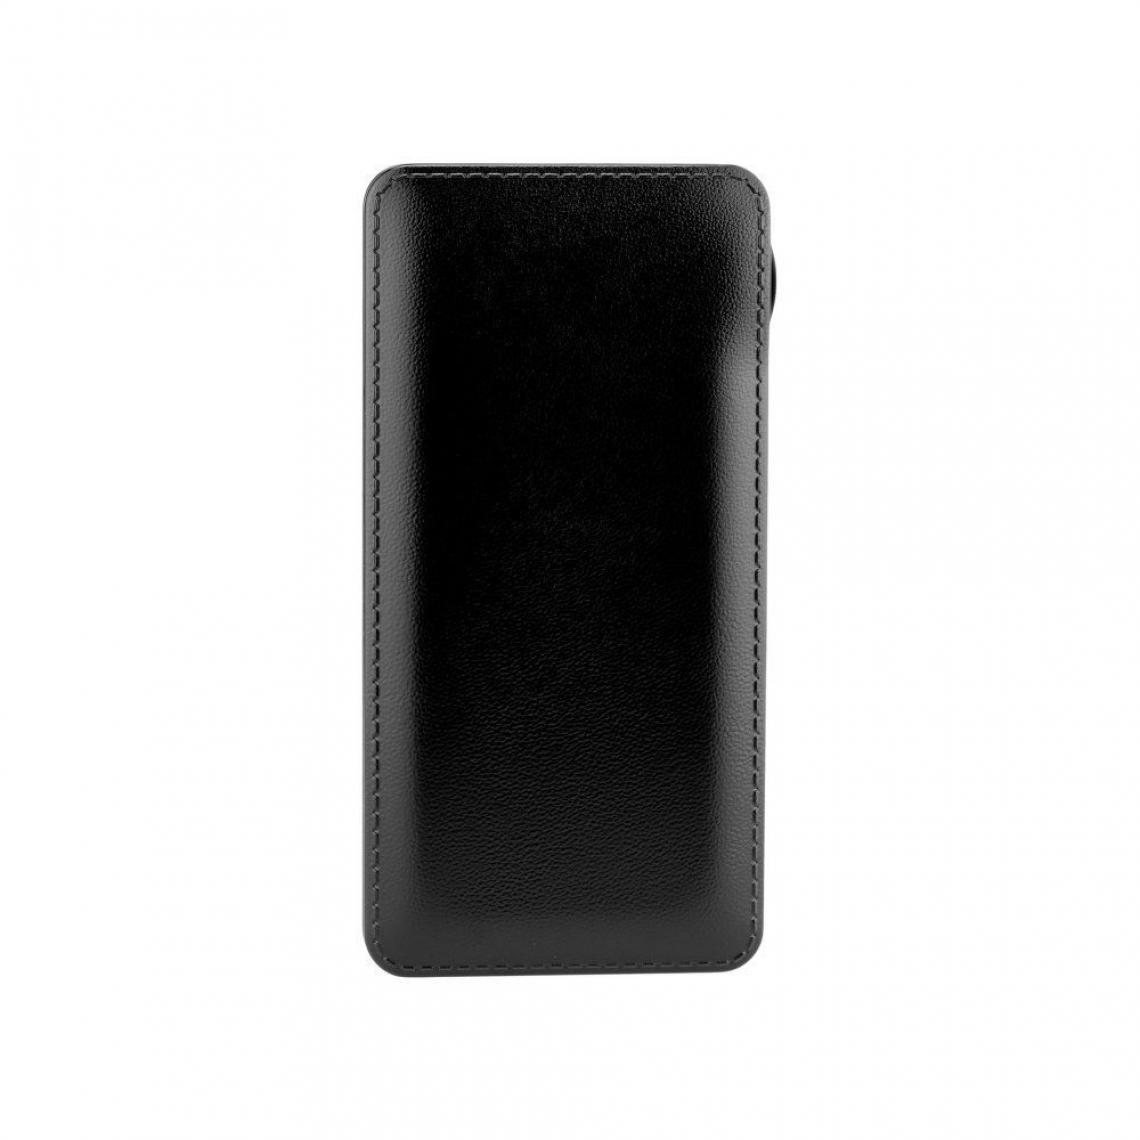 Ozzzo - Chargeur batterie externe 30000 mAh powerbank ozzzo noir pour SAMSUNG G891a Galaxy S7 Active - Autres accessoires smartphone